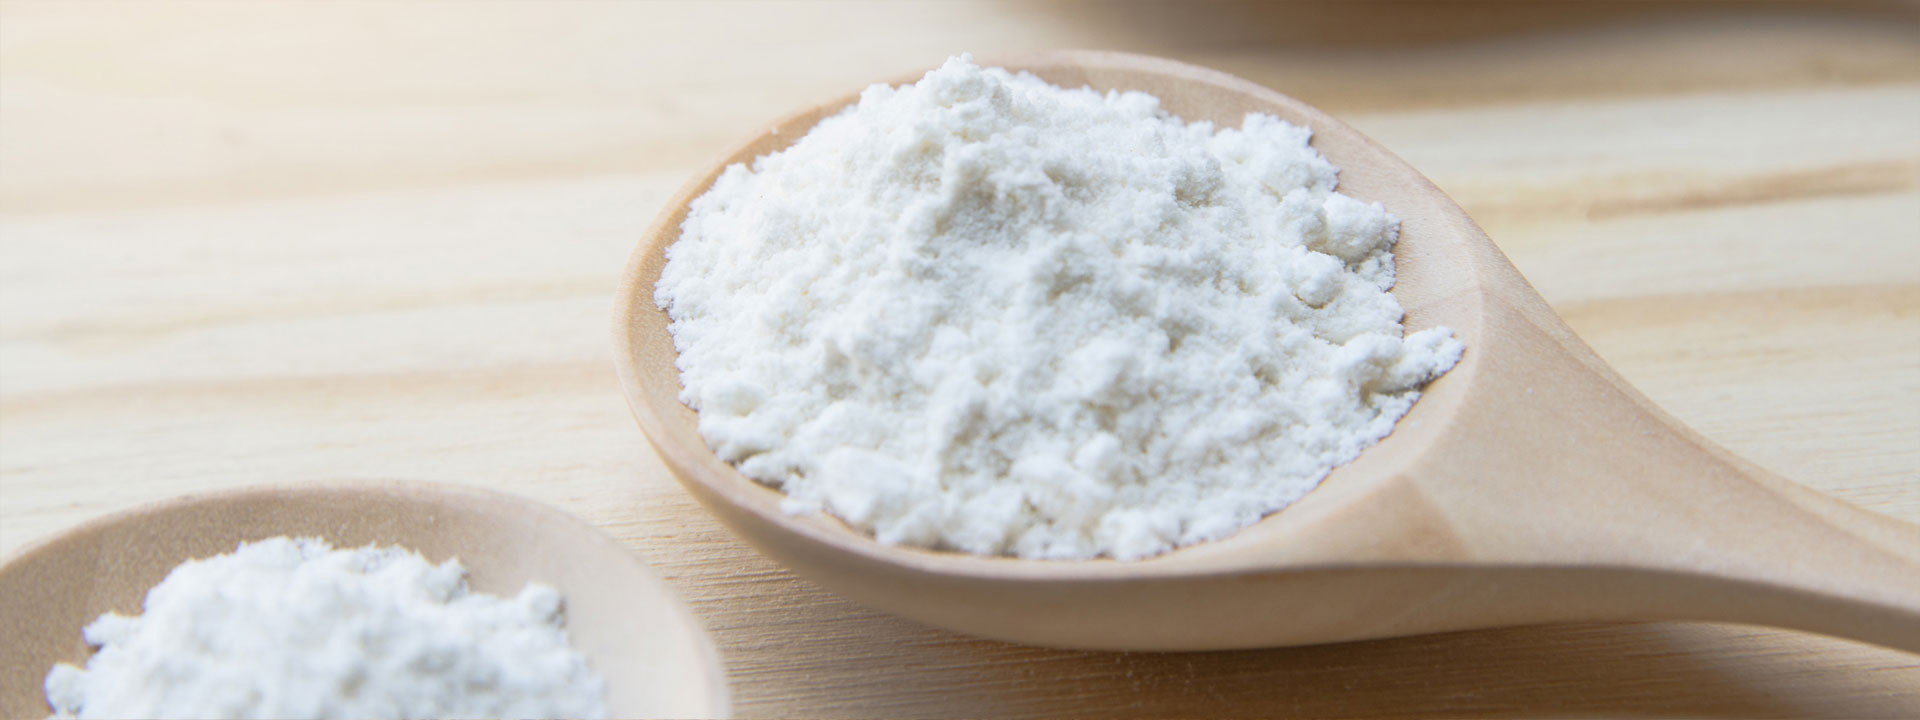 zucchero fondente in polvere Newchem